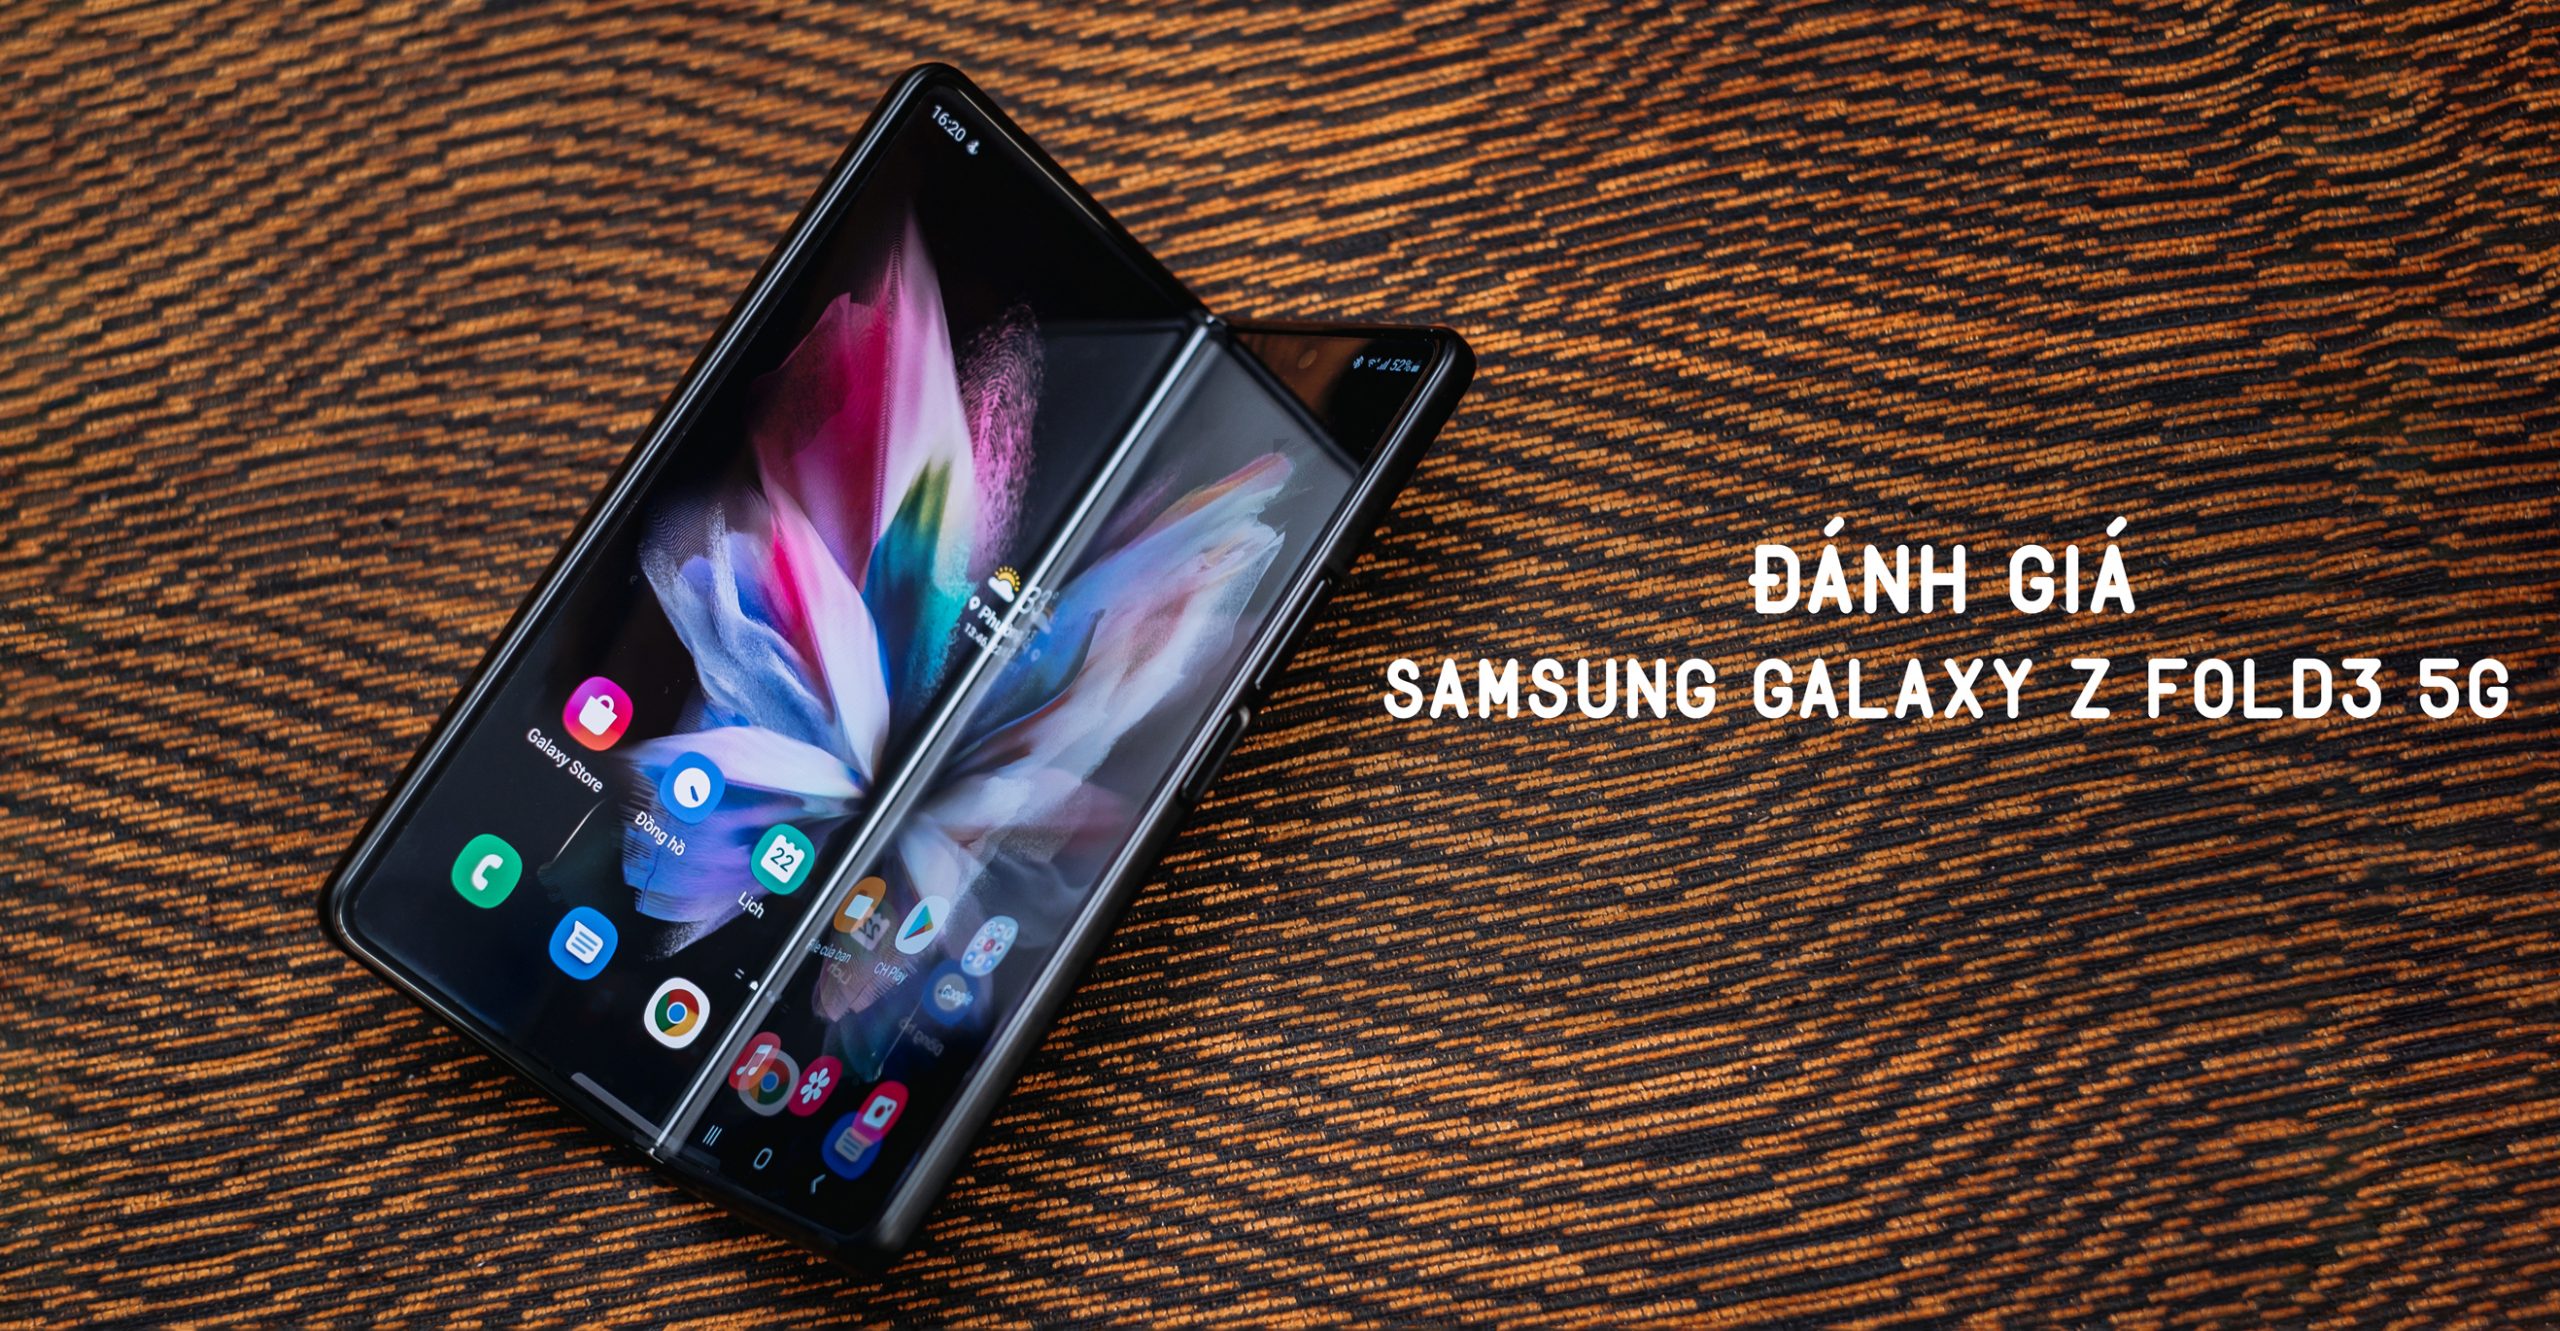 Đánh giá Samsung Galaxy Z Fold3 5G: Nhảy vọt công nghệ với camera UPC, chất liệu mới cứng cáp bền bỉ hơn cùng màn hình Eco²OLED